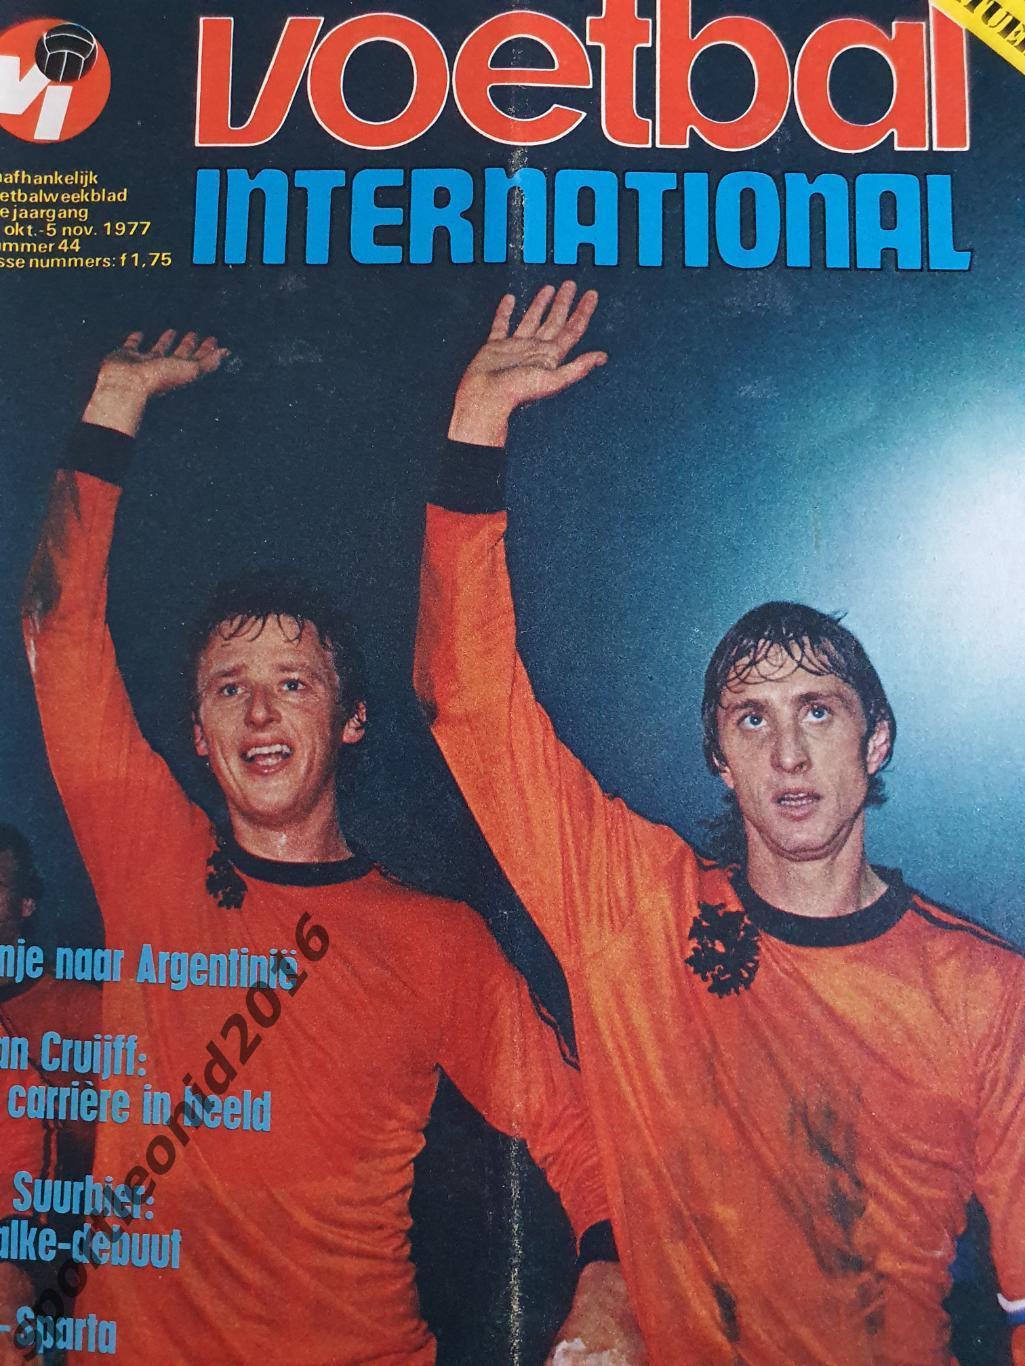 Voetbal International 1977 51 выпуск годовая подписка .1 7